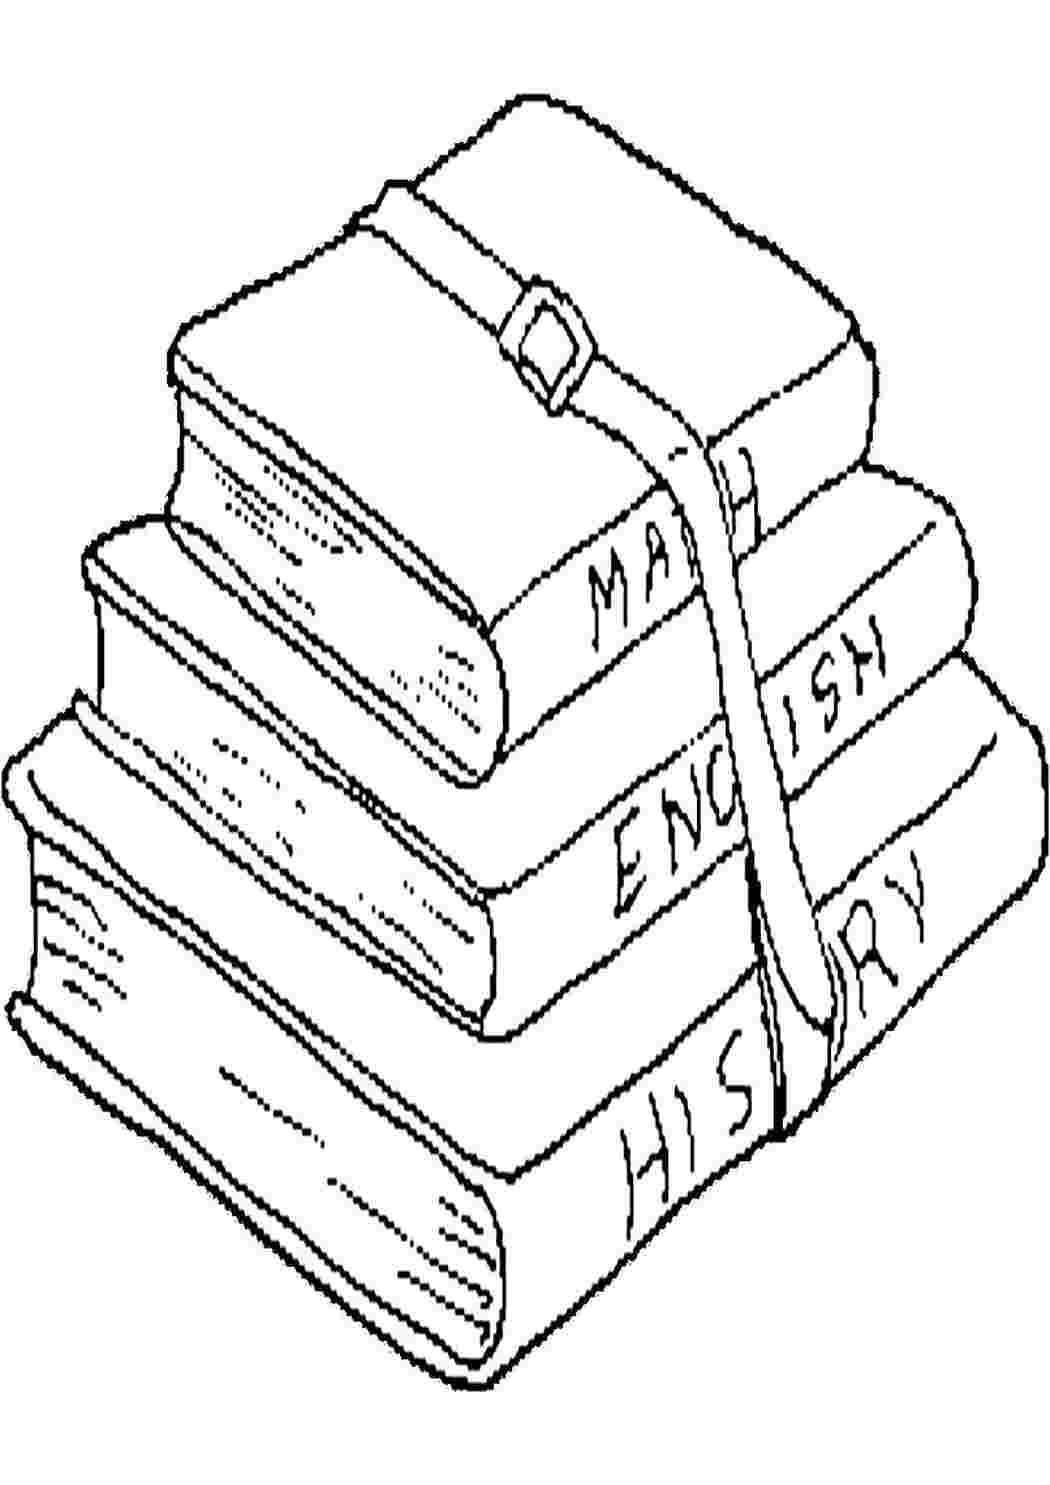 Код ТН ВЭД 4903000000: Книги-картинки, книги для рисования или для раскрашивания, детские